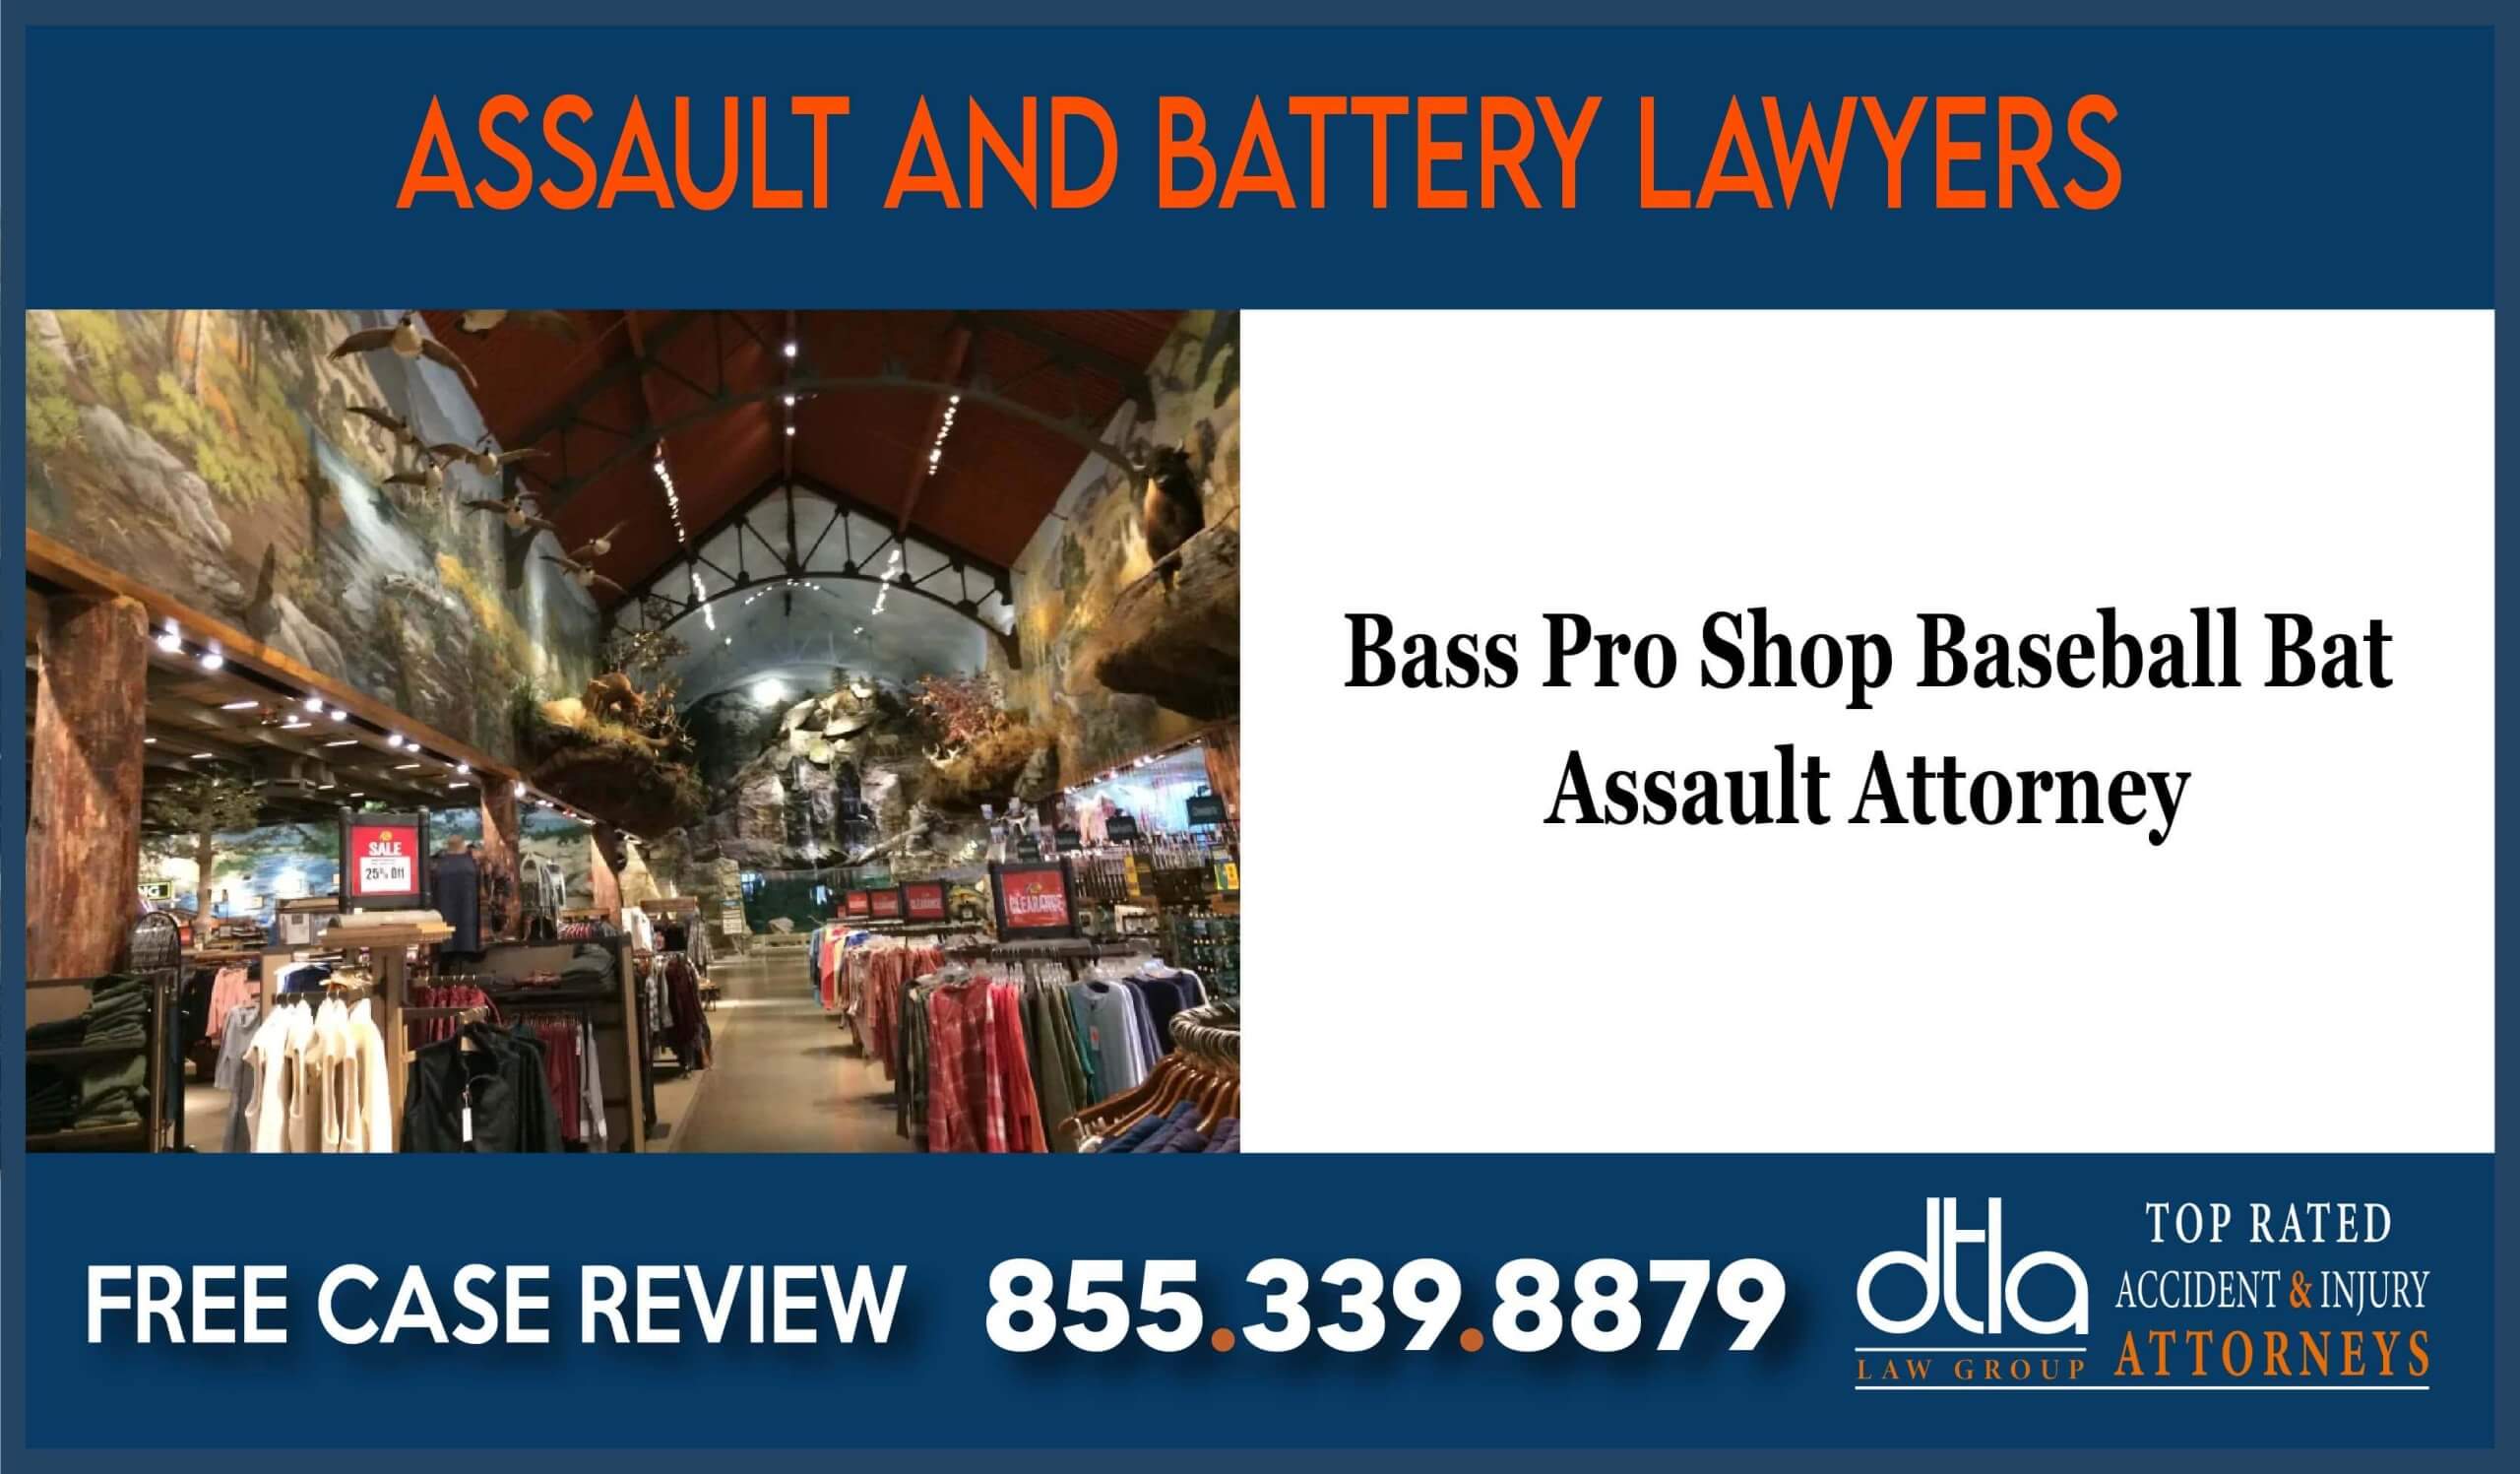 Bass Pro Shop Baseball Bat Assault Attorney lawyer sue lawsuit incident liability compensation